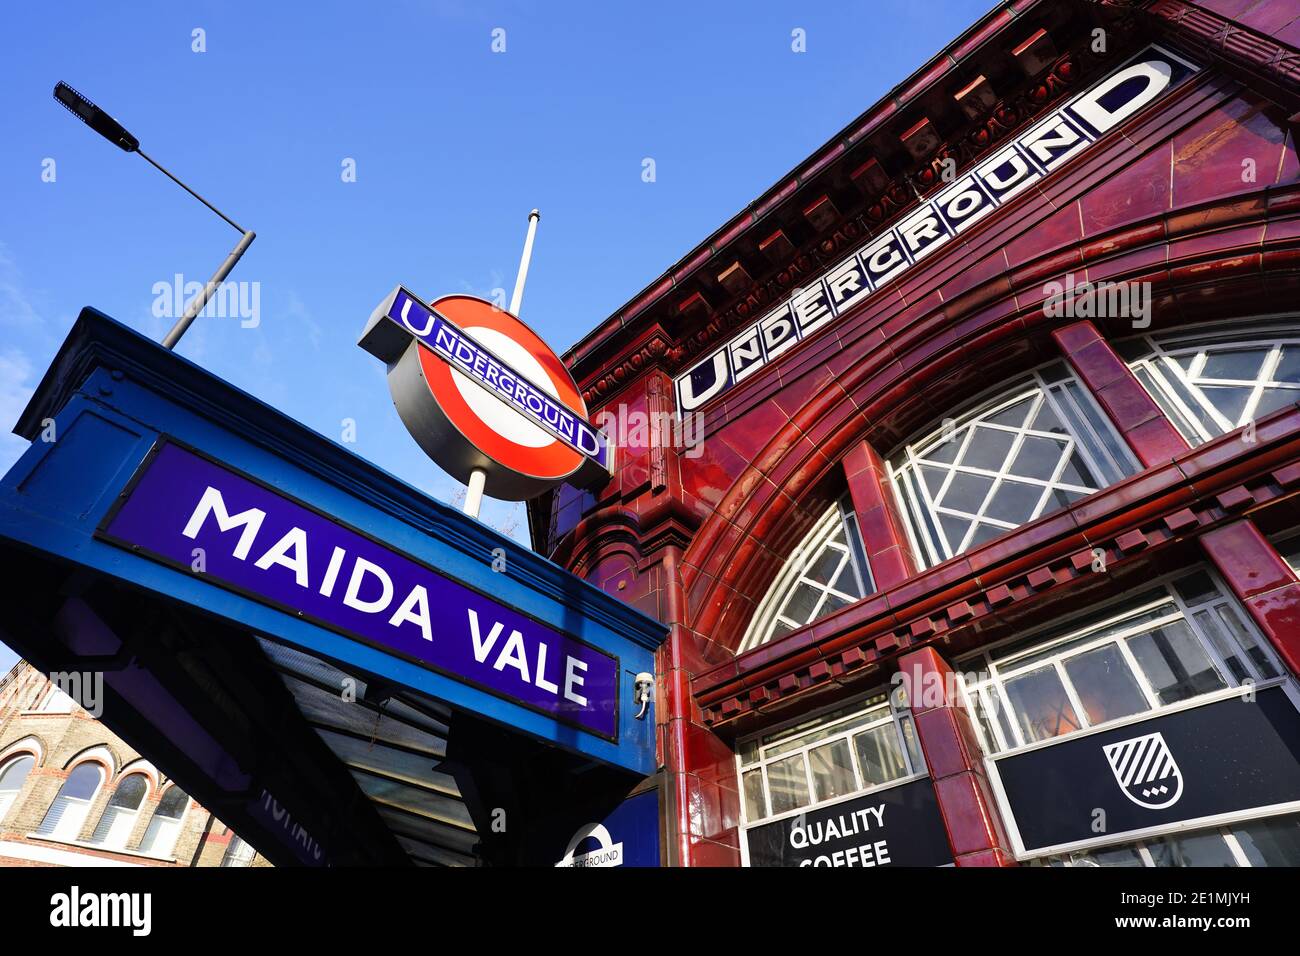 Station de métro Maida Vale, Londres. Date de la photo : mercredi 6 janvier 2021. Photo: Roger Garfield/Alamy Banque D'Images